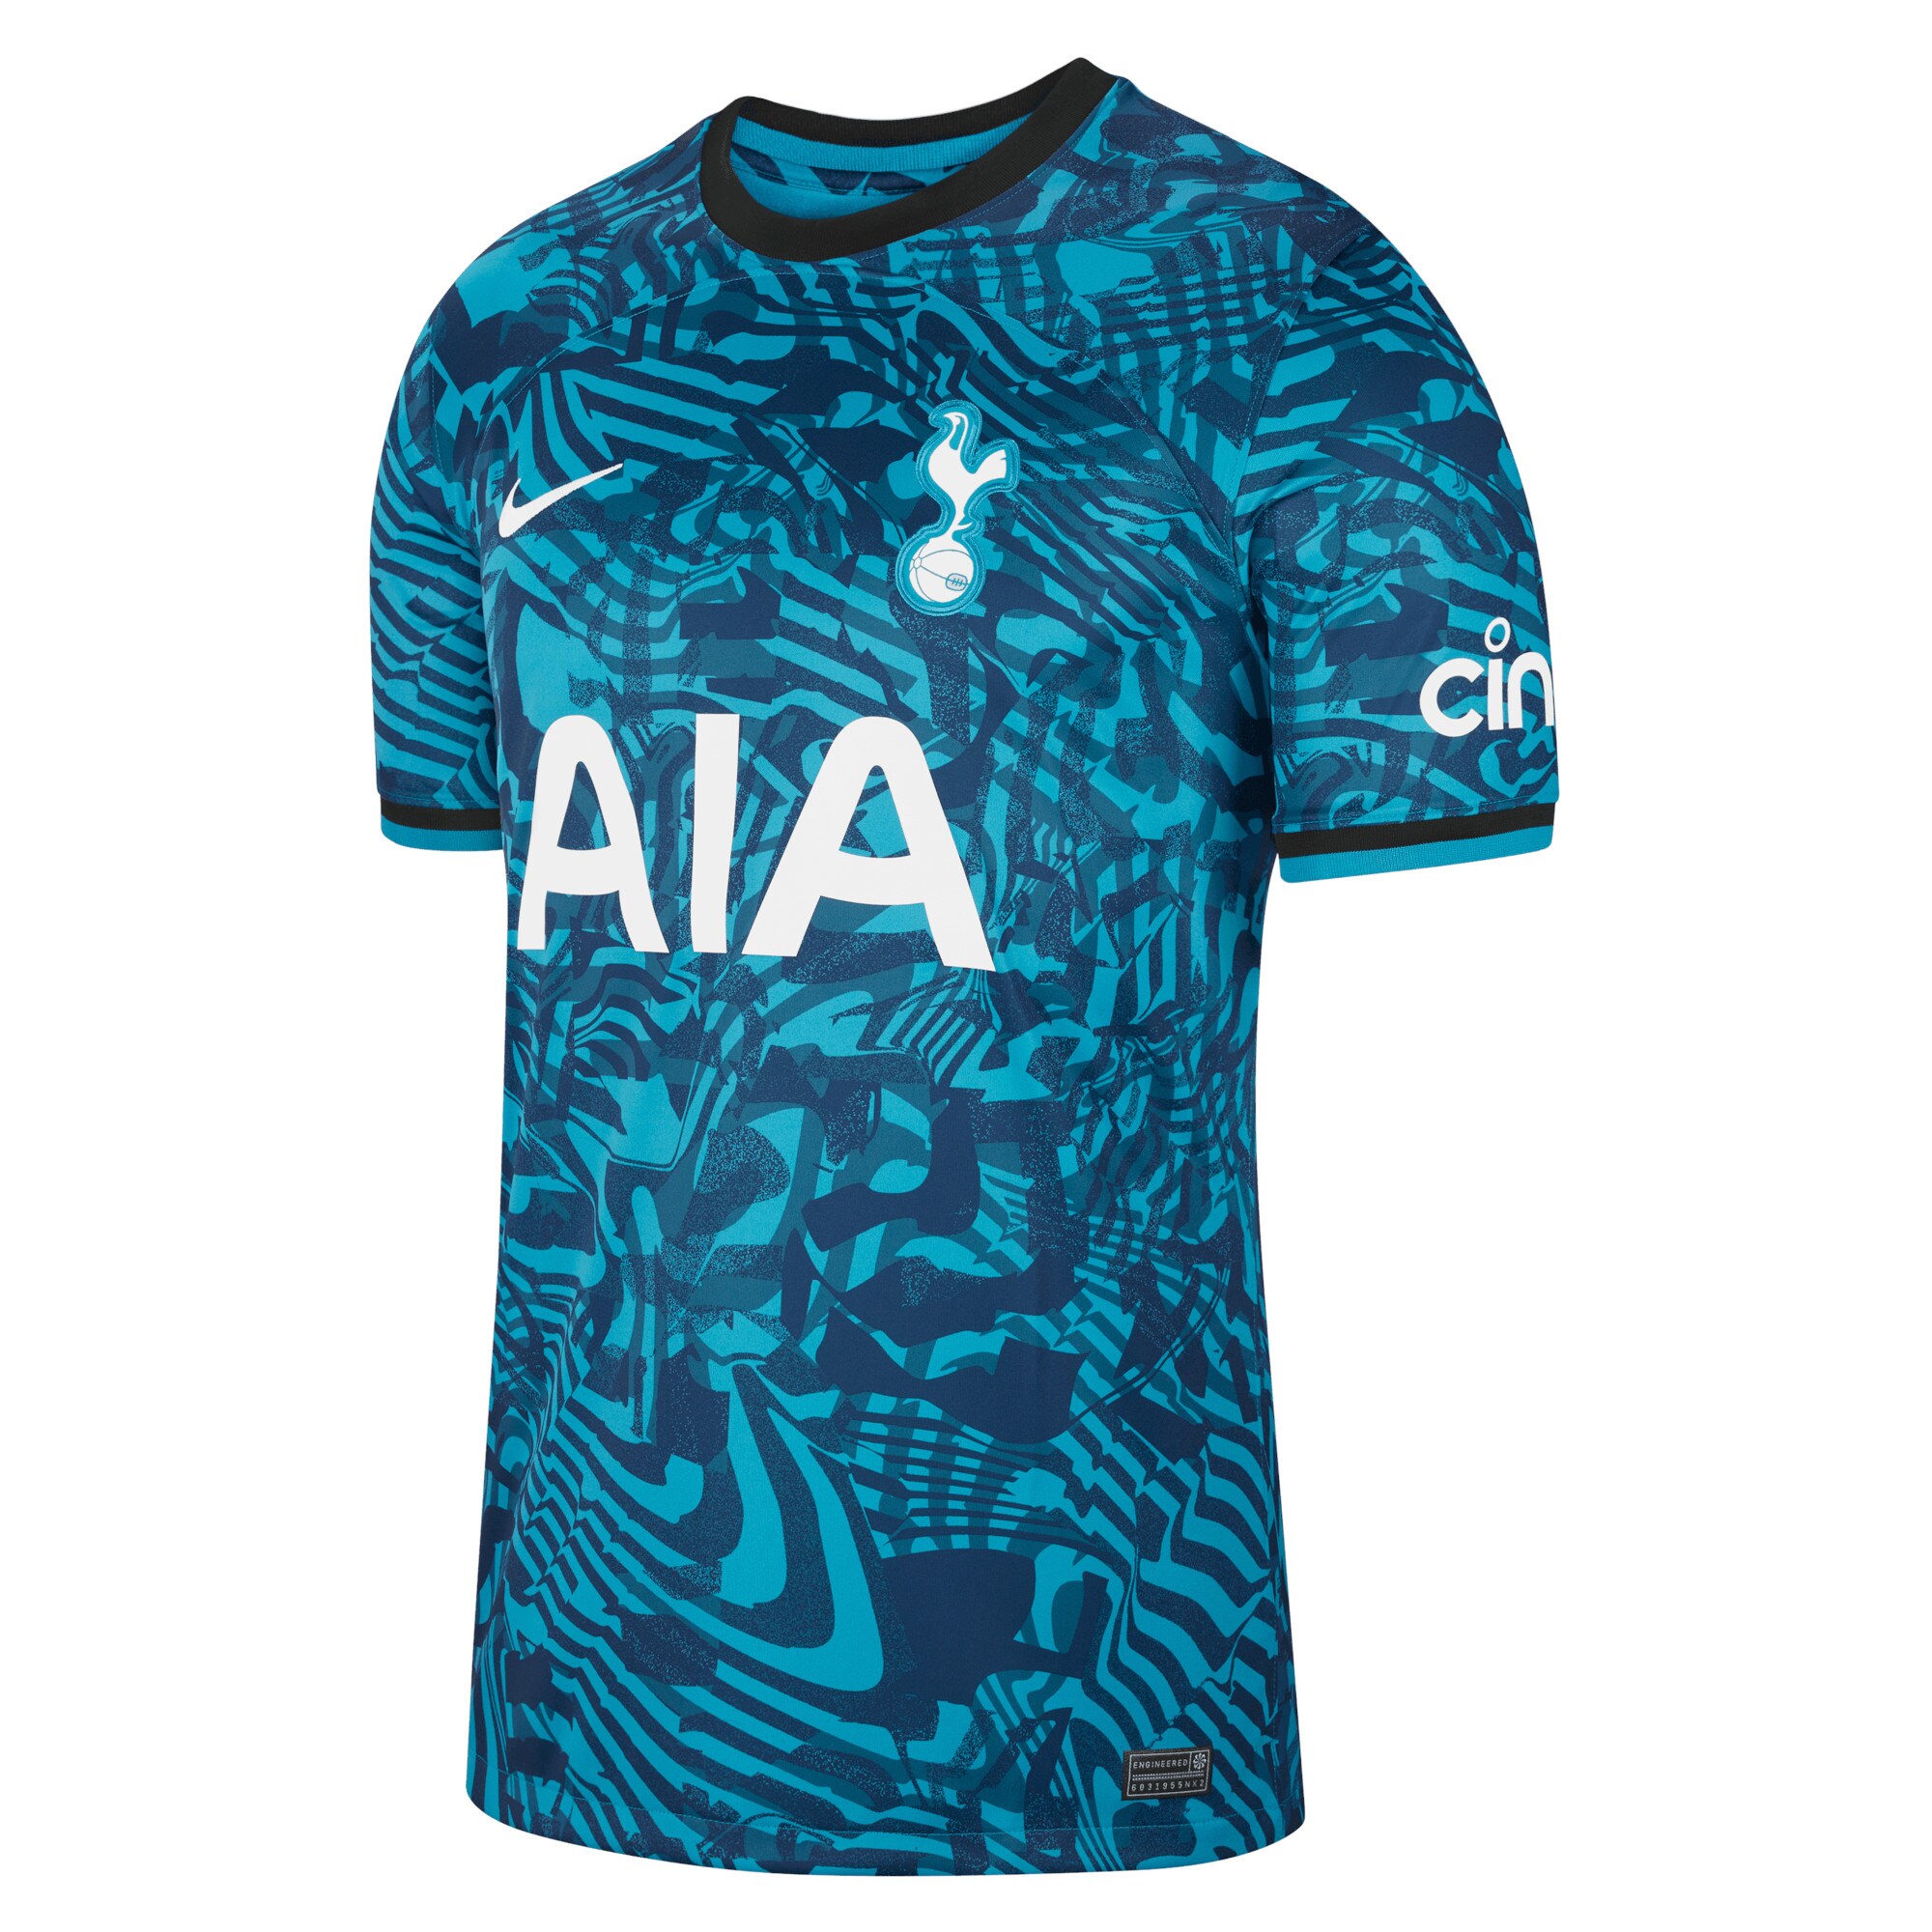 Tottenham Hotspur Third Stadium Shirt 2022-23 with Kane 10 printing